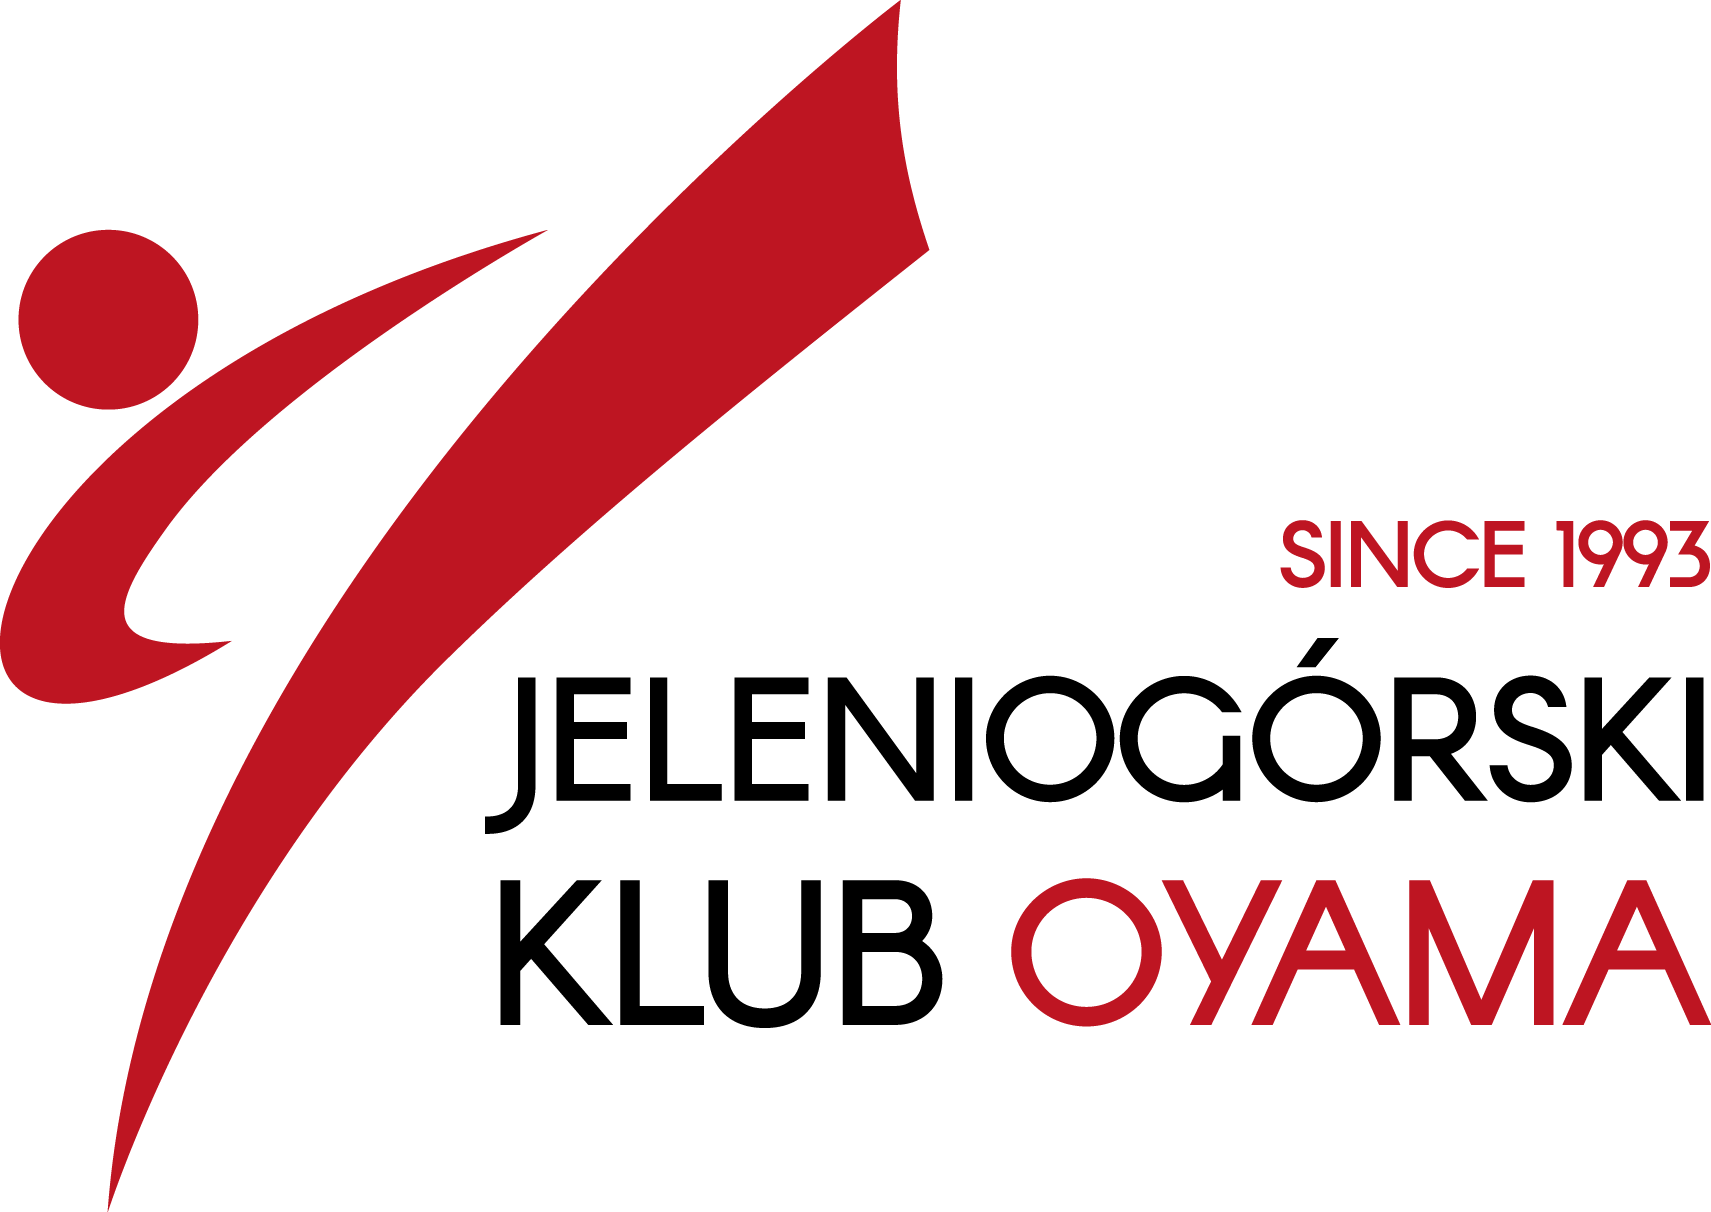 Oyama Karate